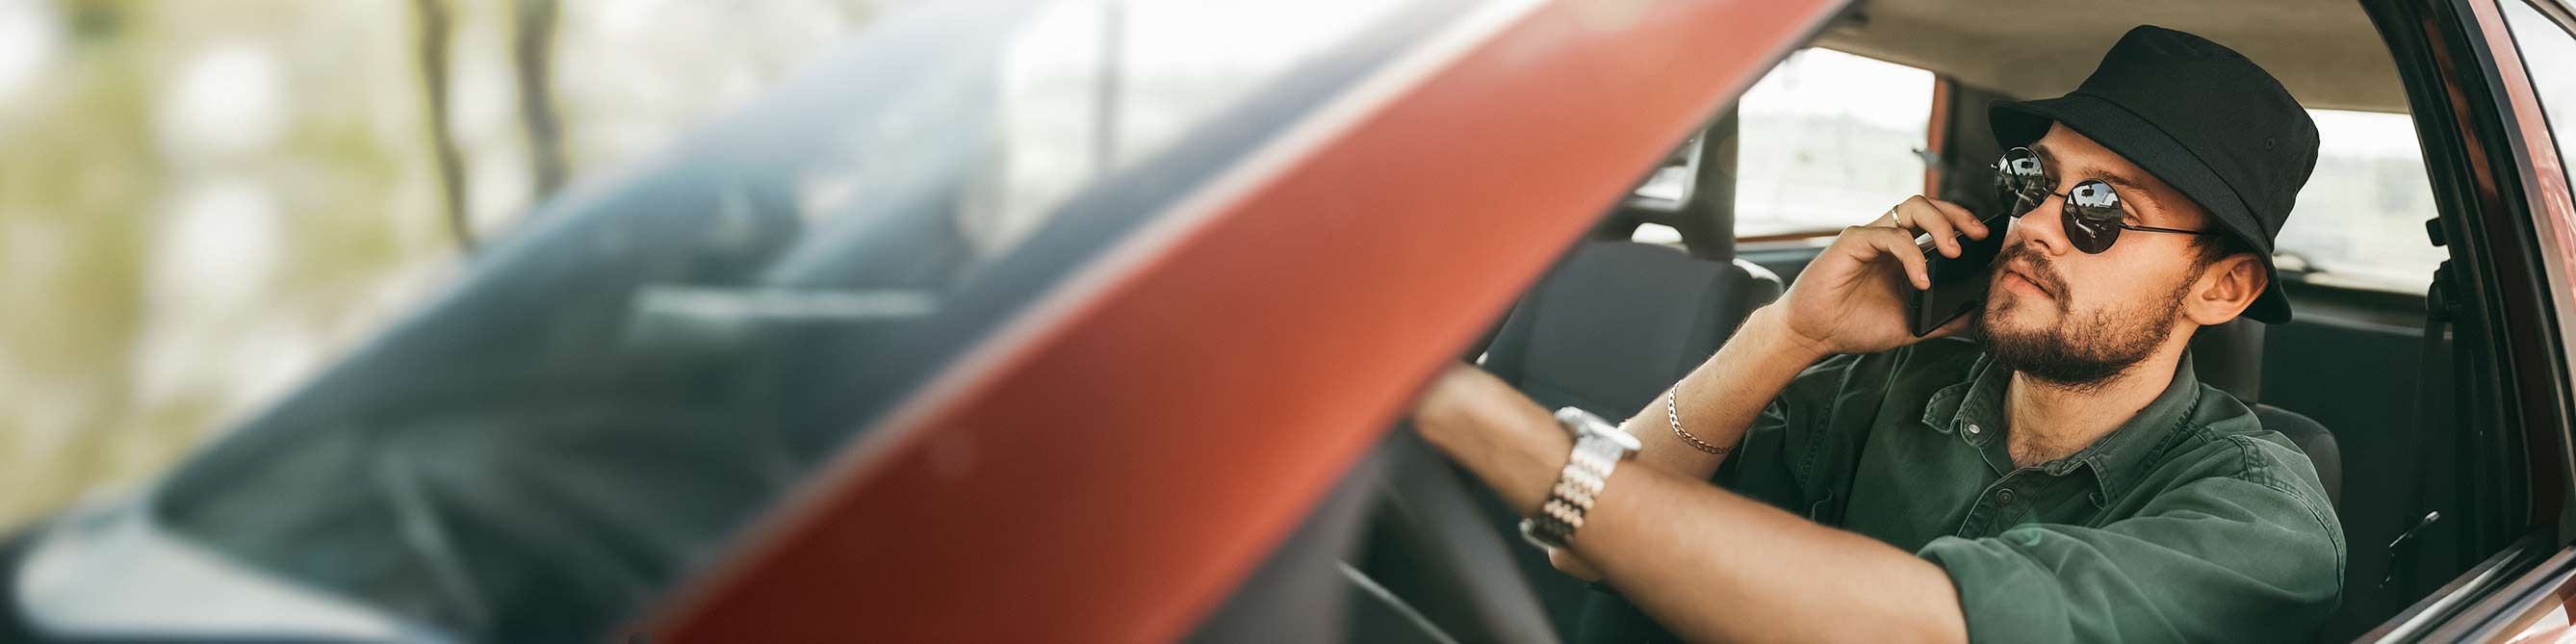 Frau im Auto wird durch Handy abgelenkt